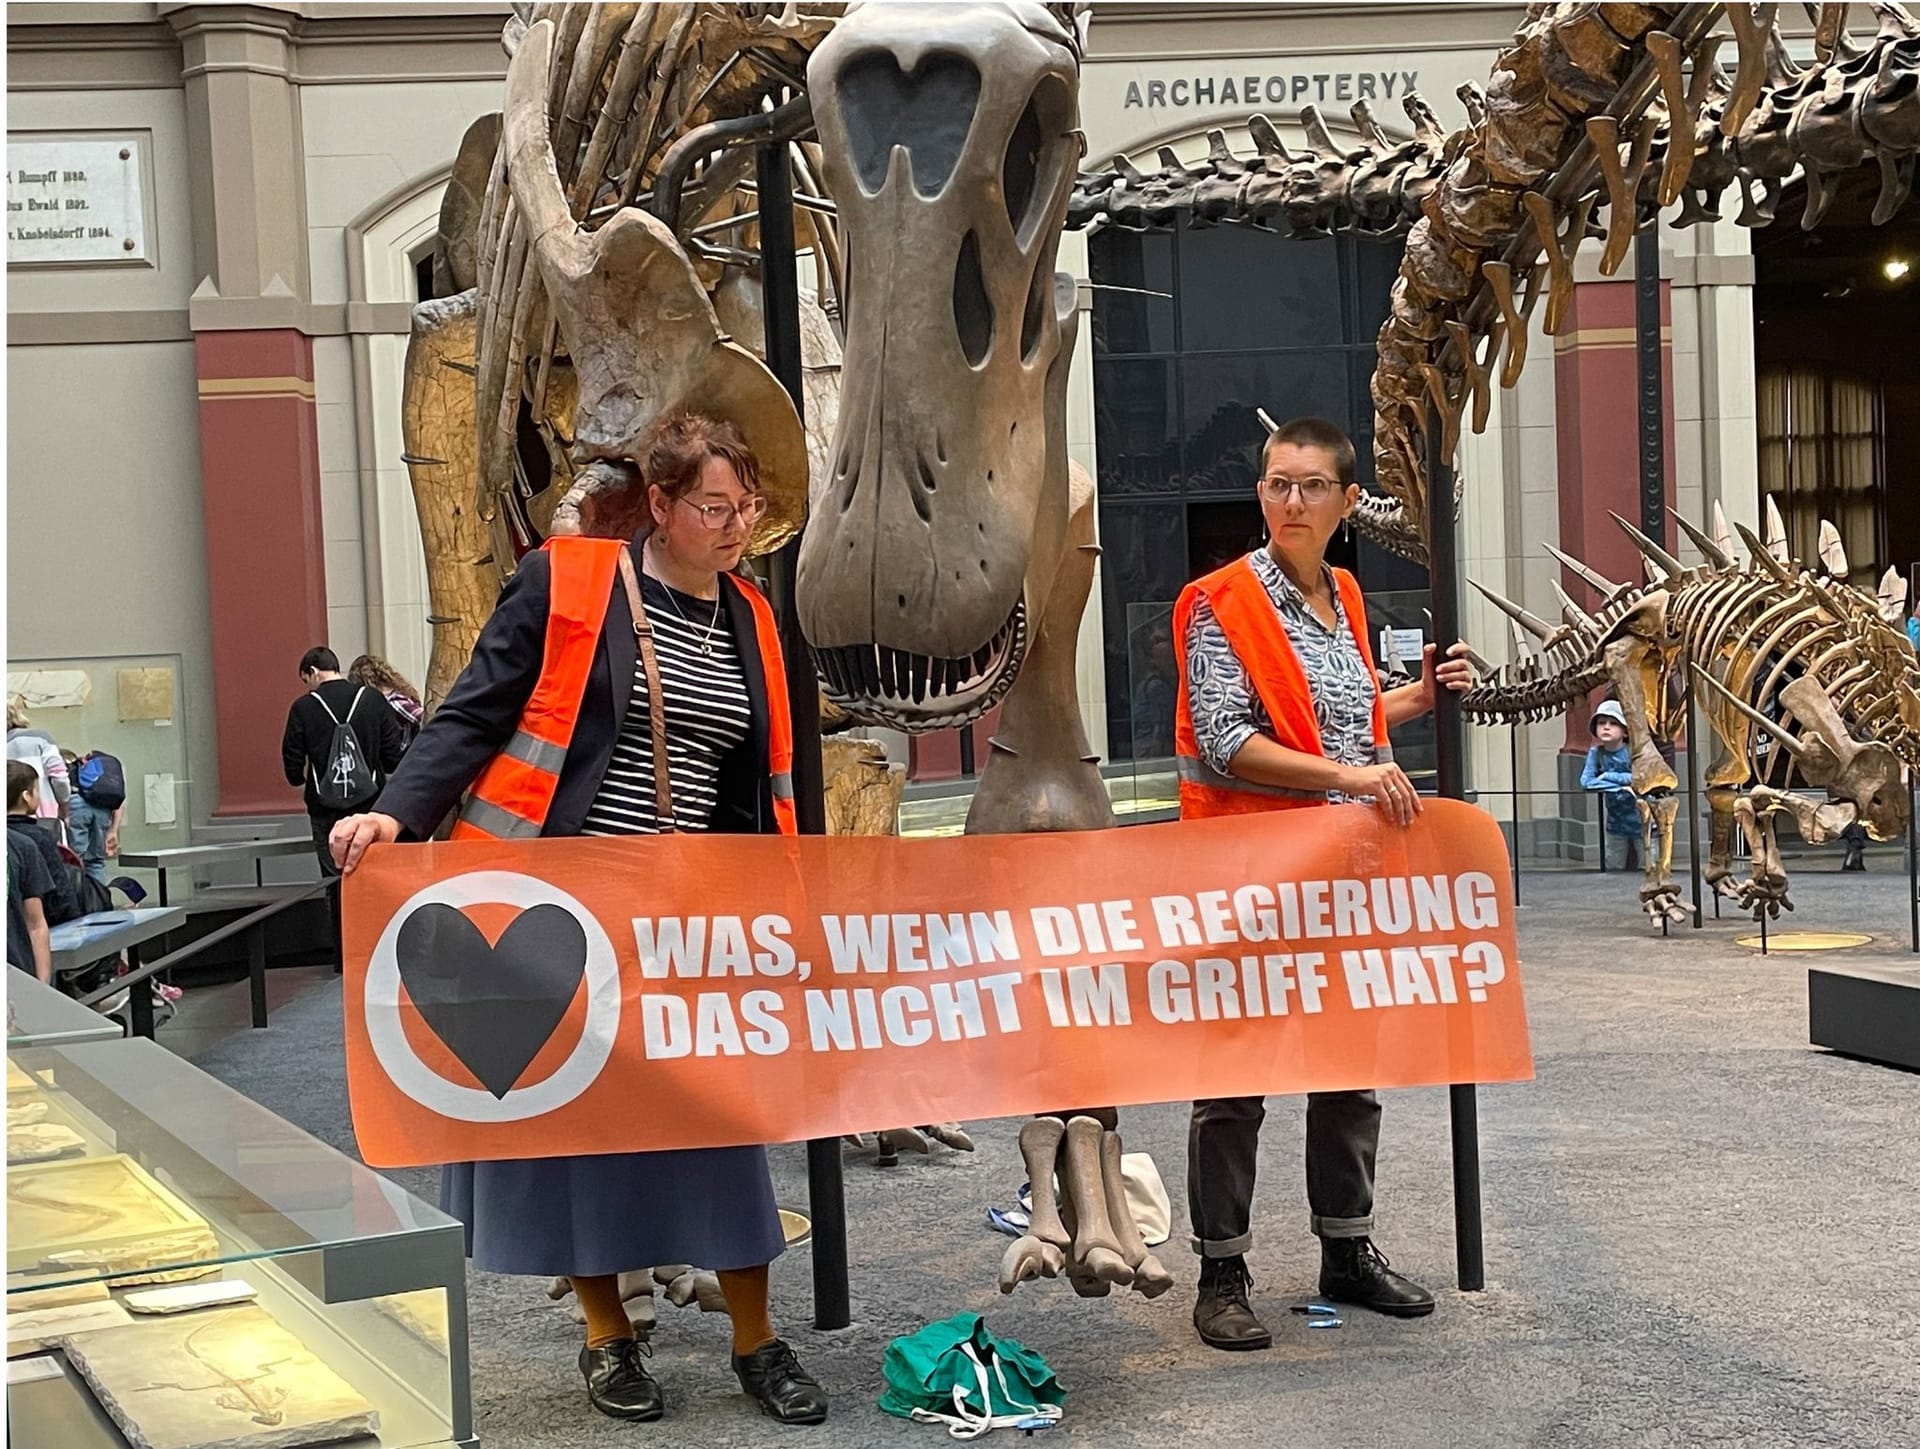 Zwei Klimaaktivistinnen im Naturkundemuseum: Auf ihrem Banner steht: "Was, wenn die Regierung das nicht im Griff hat?"